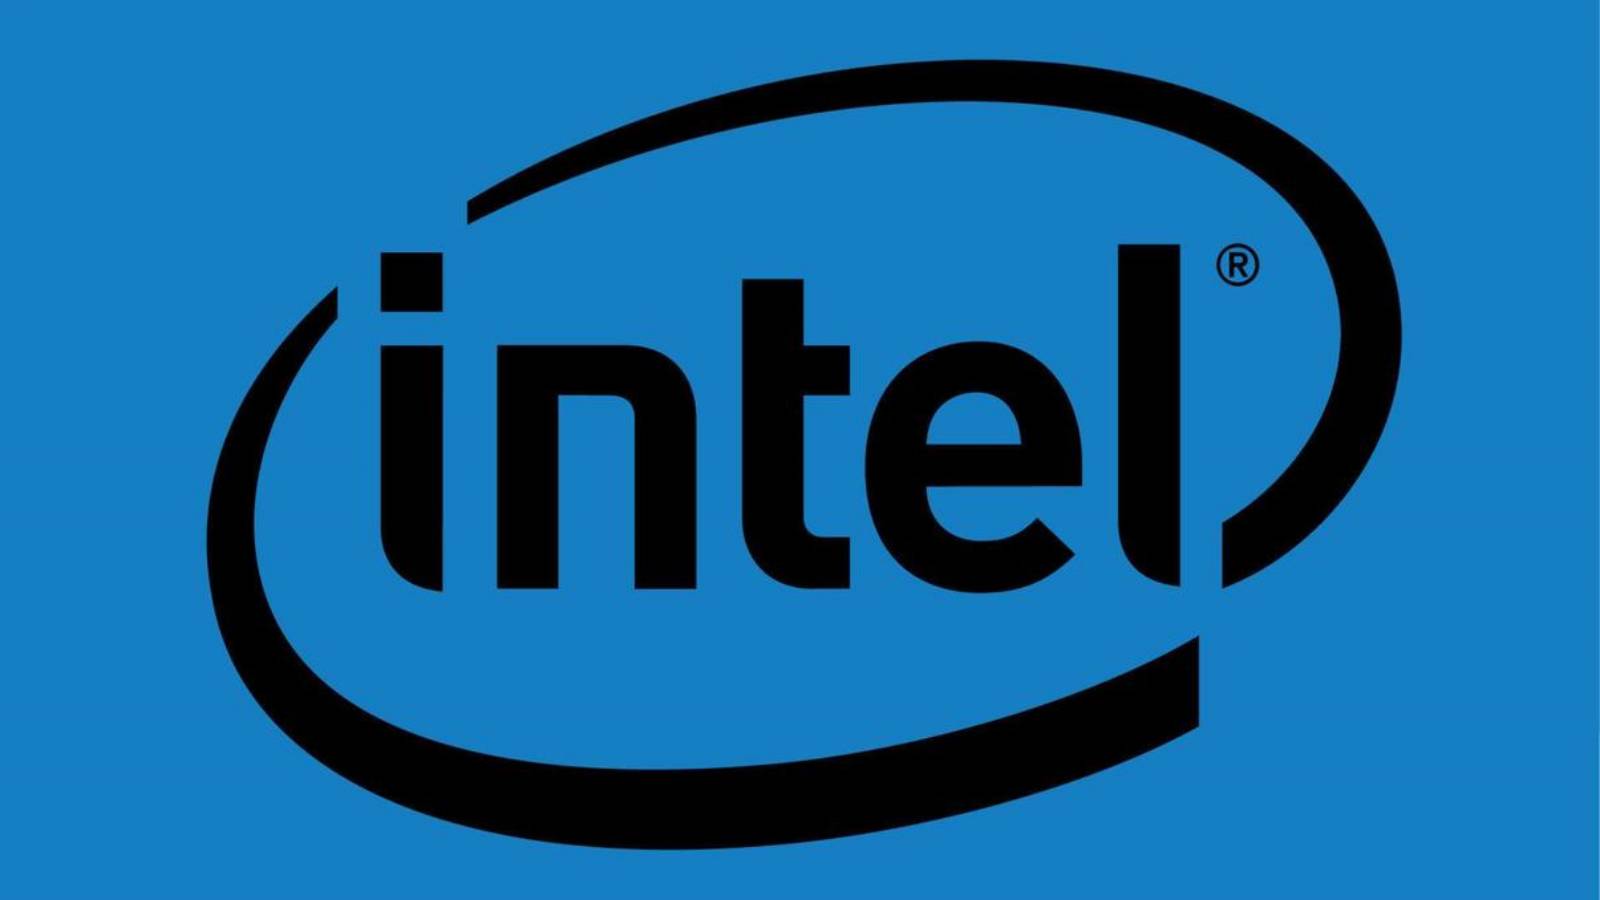 Huawei Intel VERslaat AMD dankzij de Joe Biden-administratie